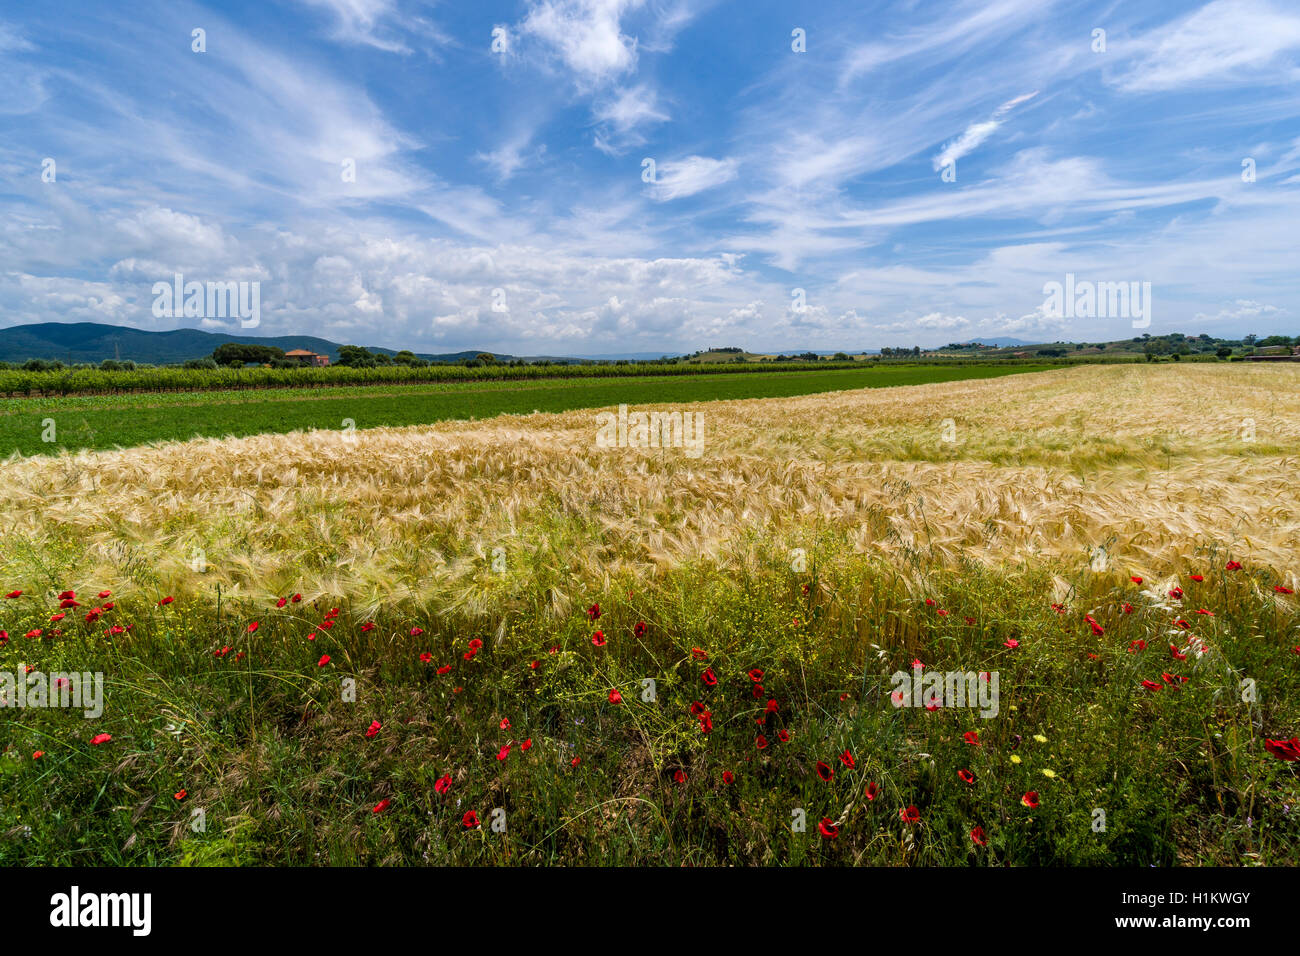 Vert typique du paysage toscan avec des collines, des vignes, coquelicots, champ de céréales, ferme et bleu, ciel nuageux Banque D'Images